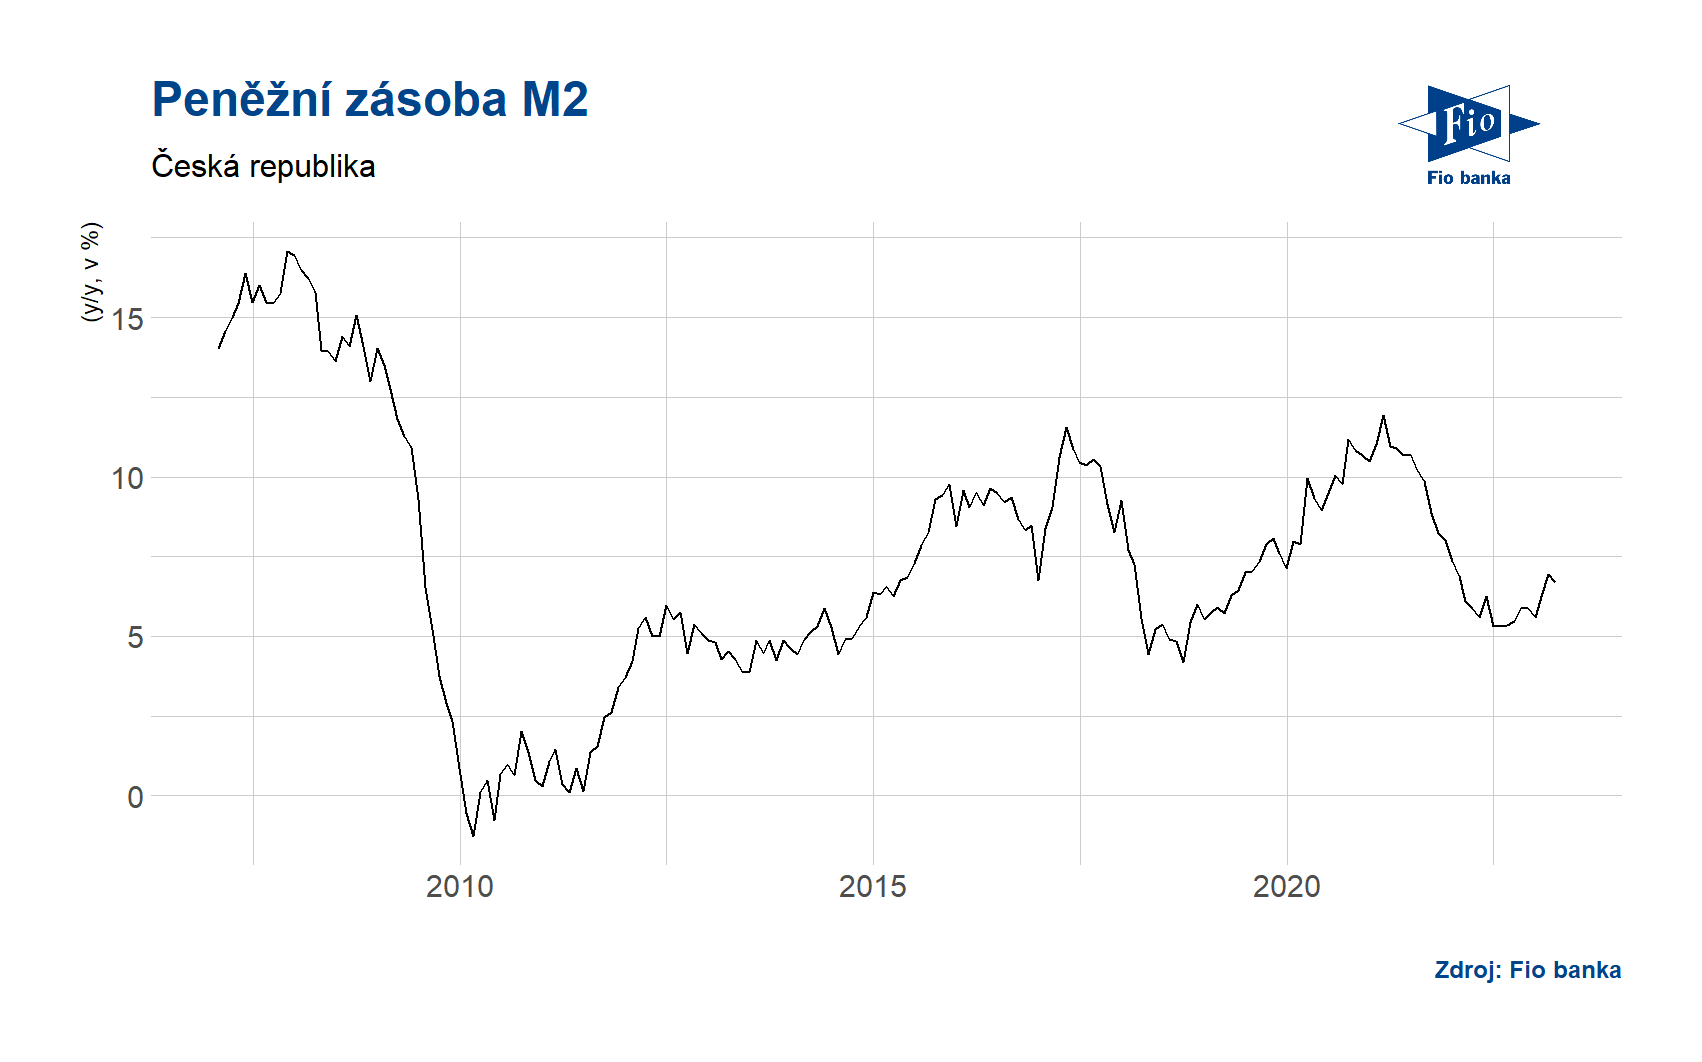 Vývoj měnové zásoby M2 v ČR